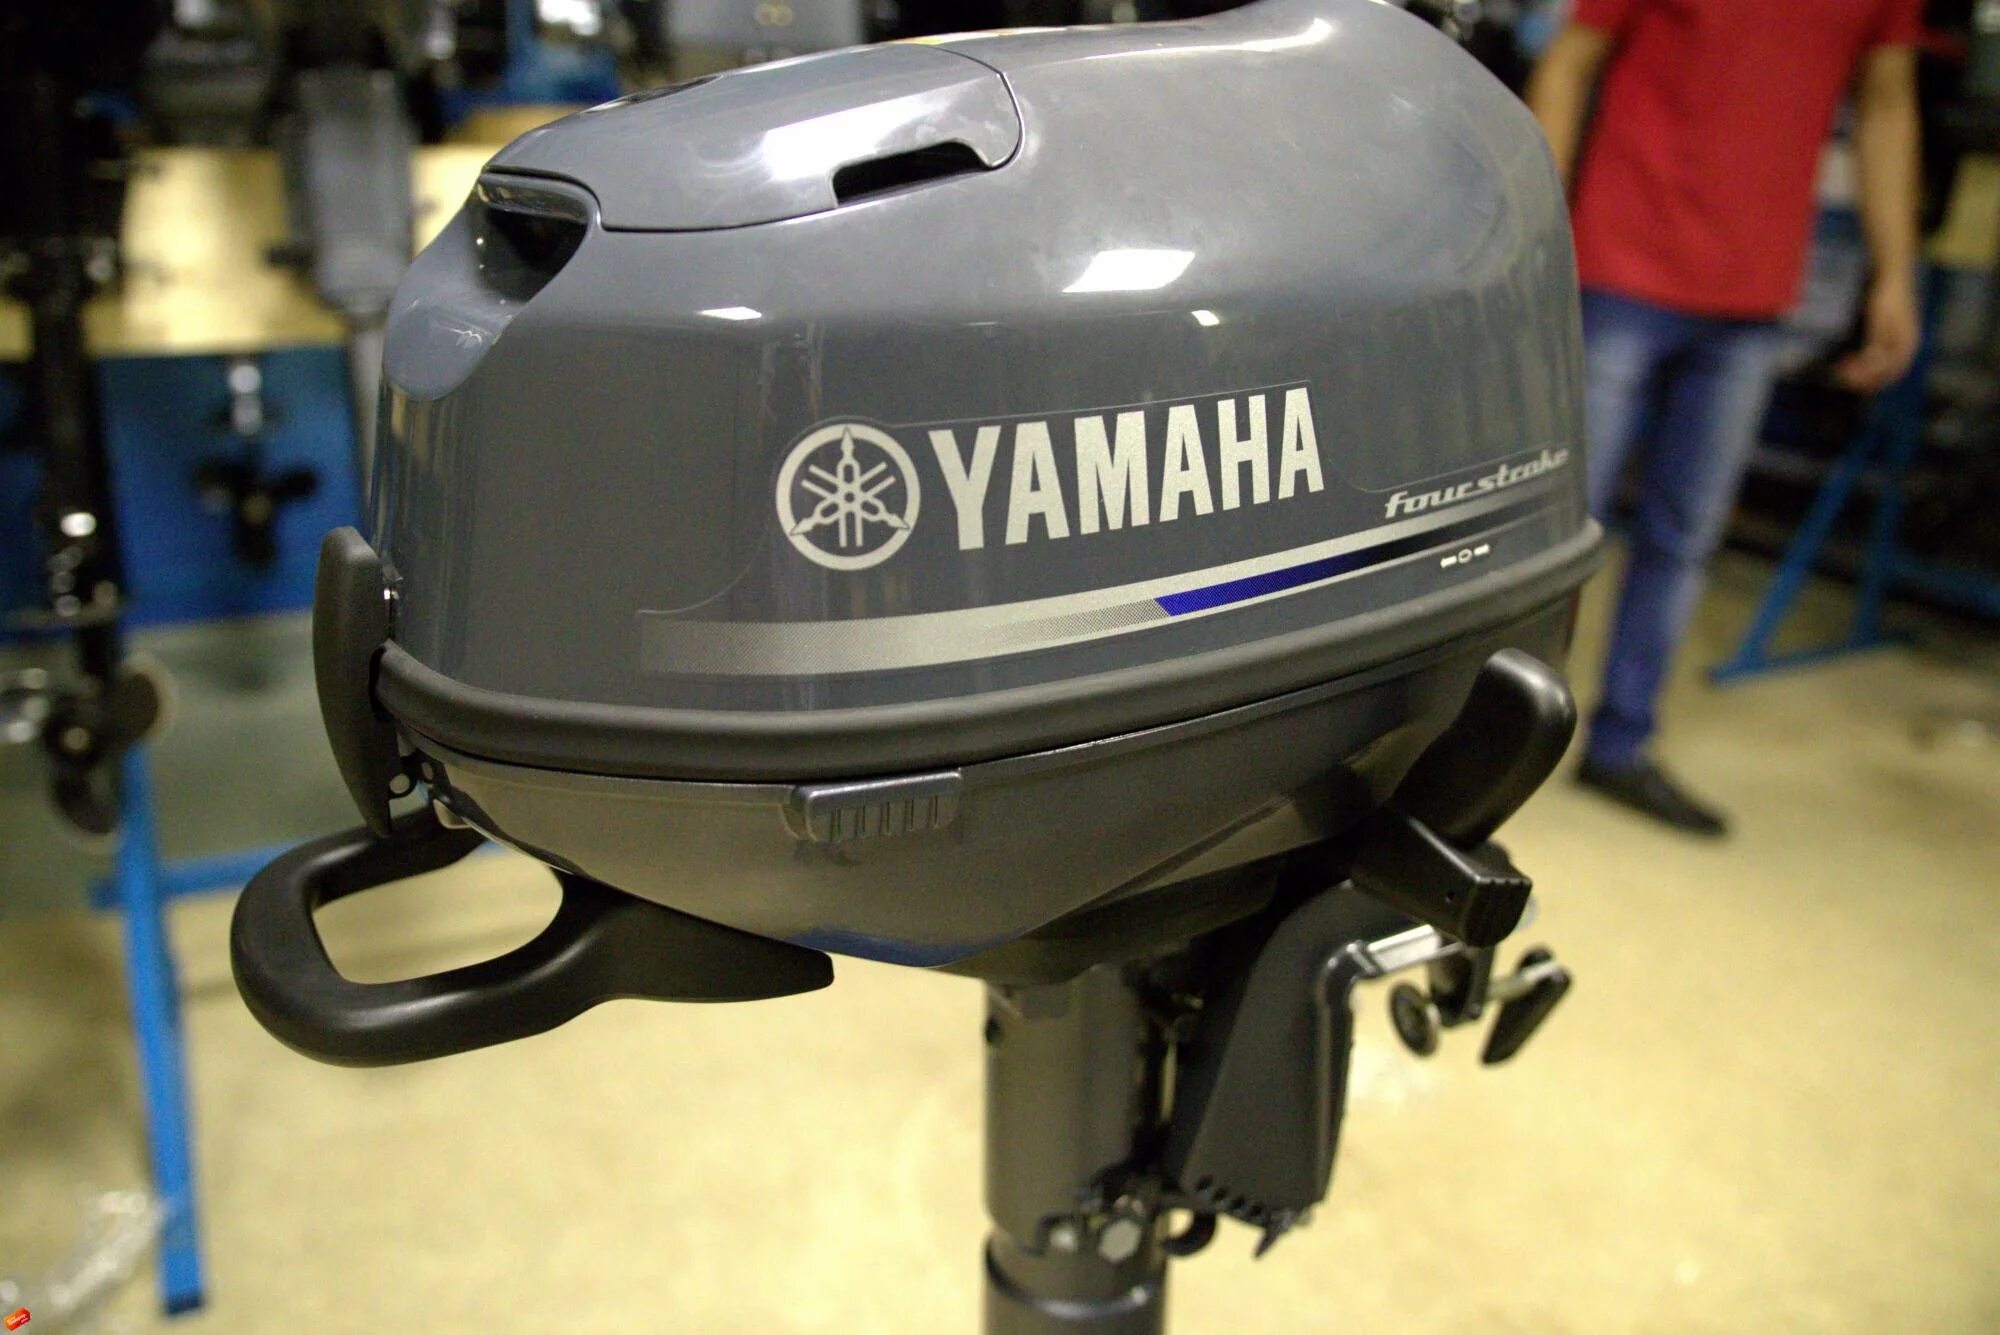 Ямаха центр лодочные моторы. Лодочный мотор Yamaha f5. Лодочный мотор Yamaha 5. Yamaha f5amhs. Лодочный мотор Ямаха 5 4х тактный.